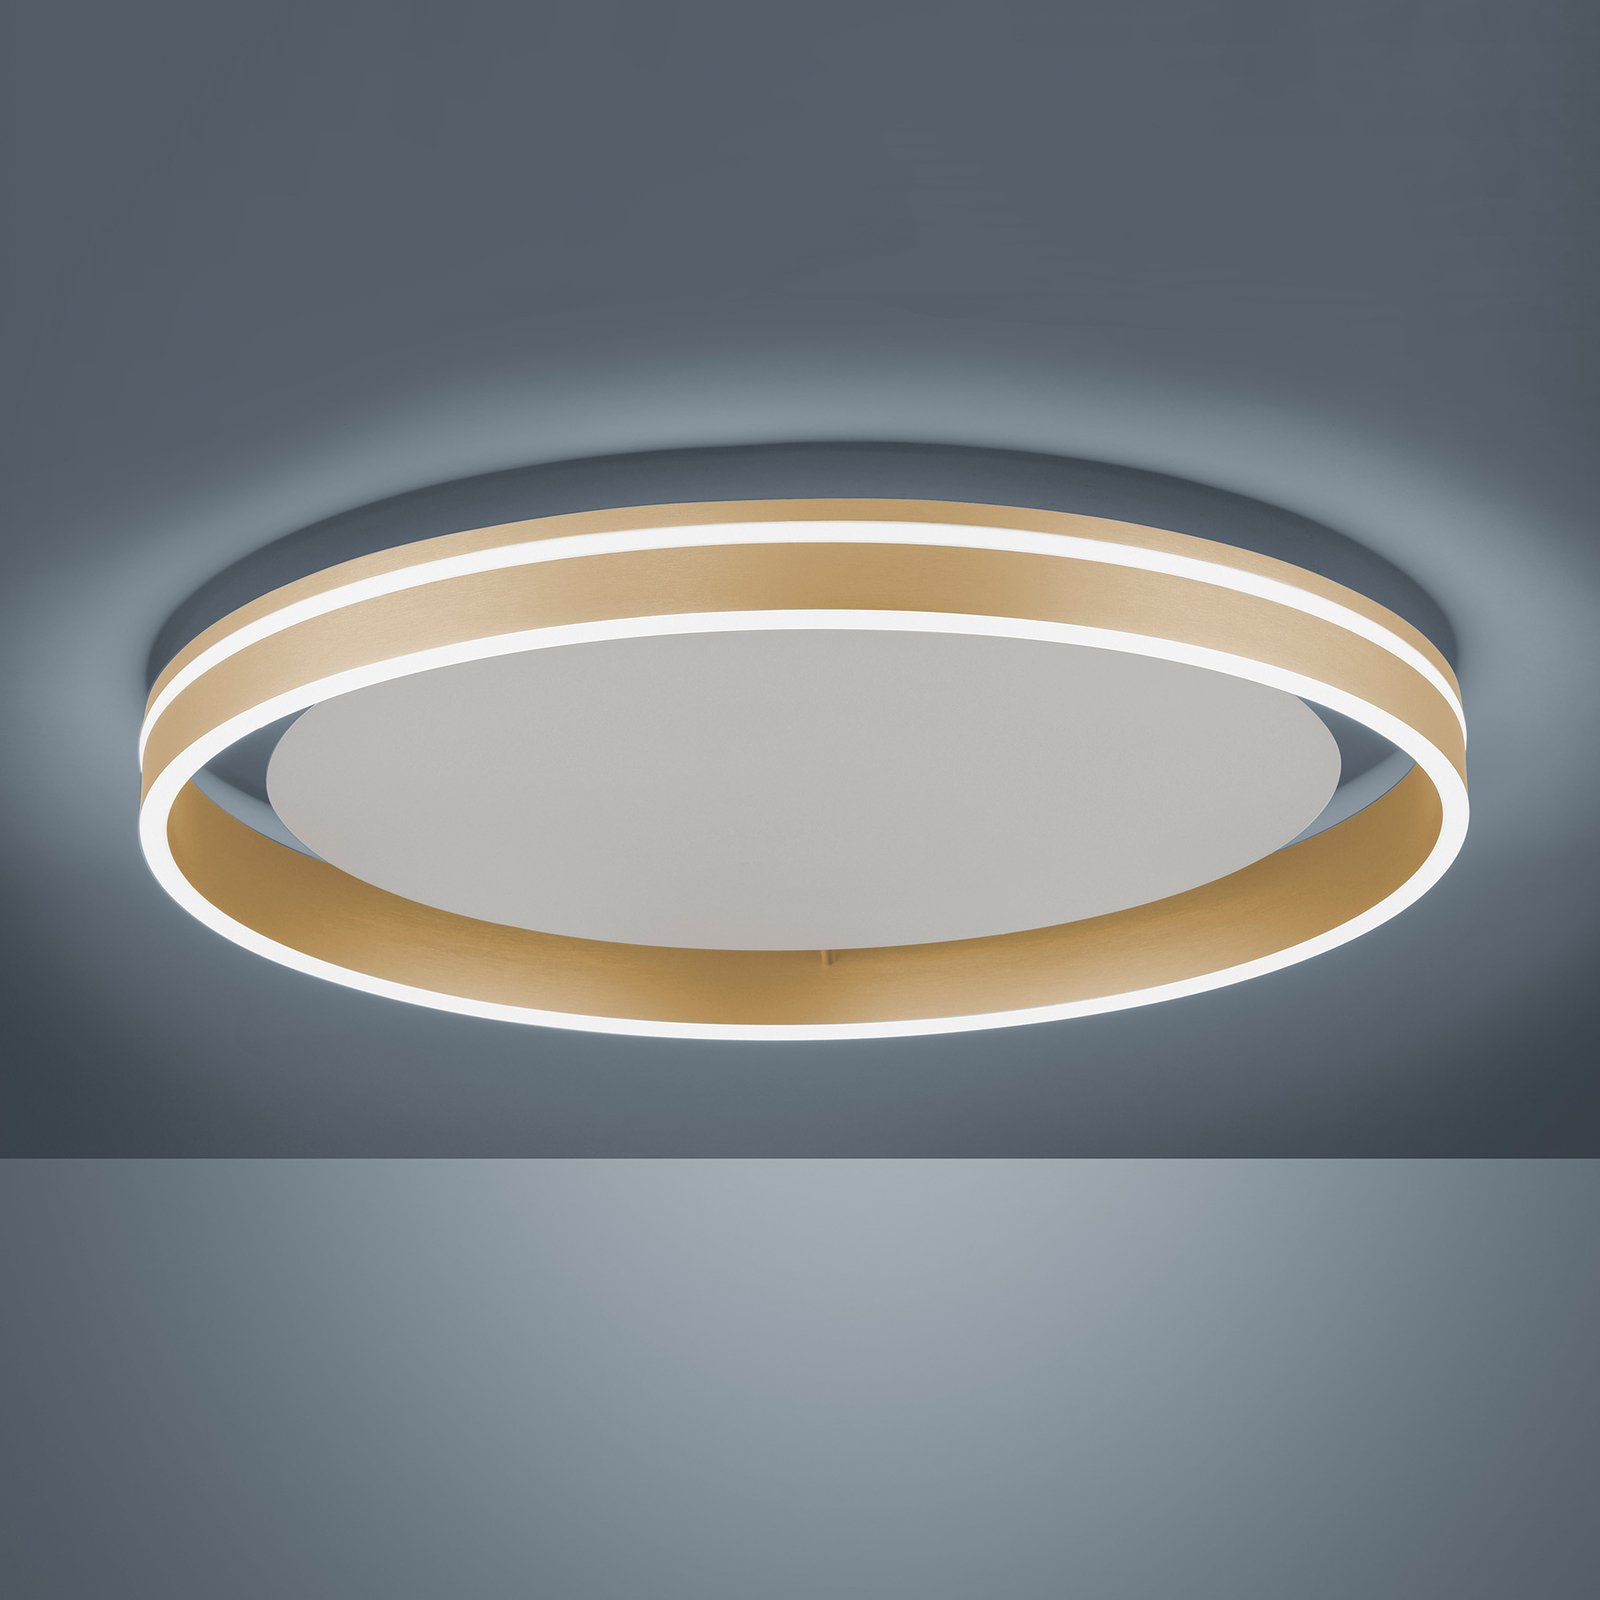 Paul Neuhaus Q-VITO LED ceiling lamp, Ø 60cm